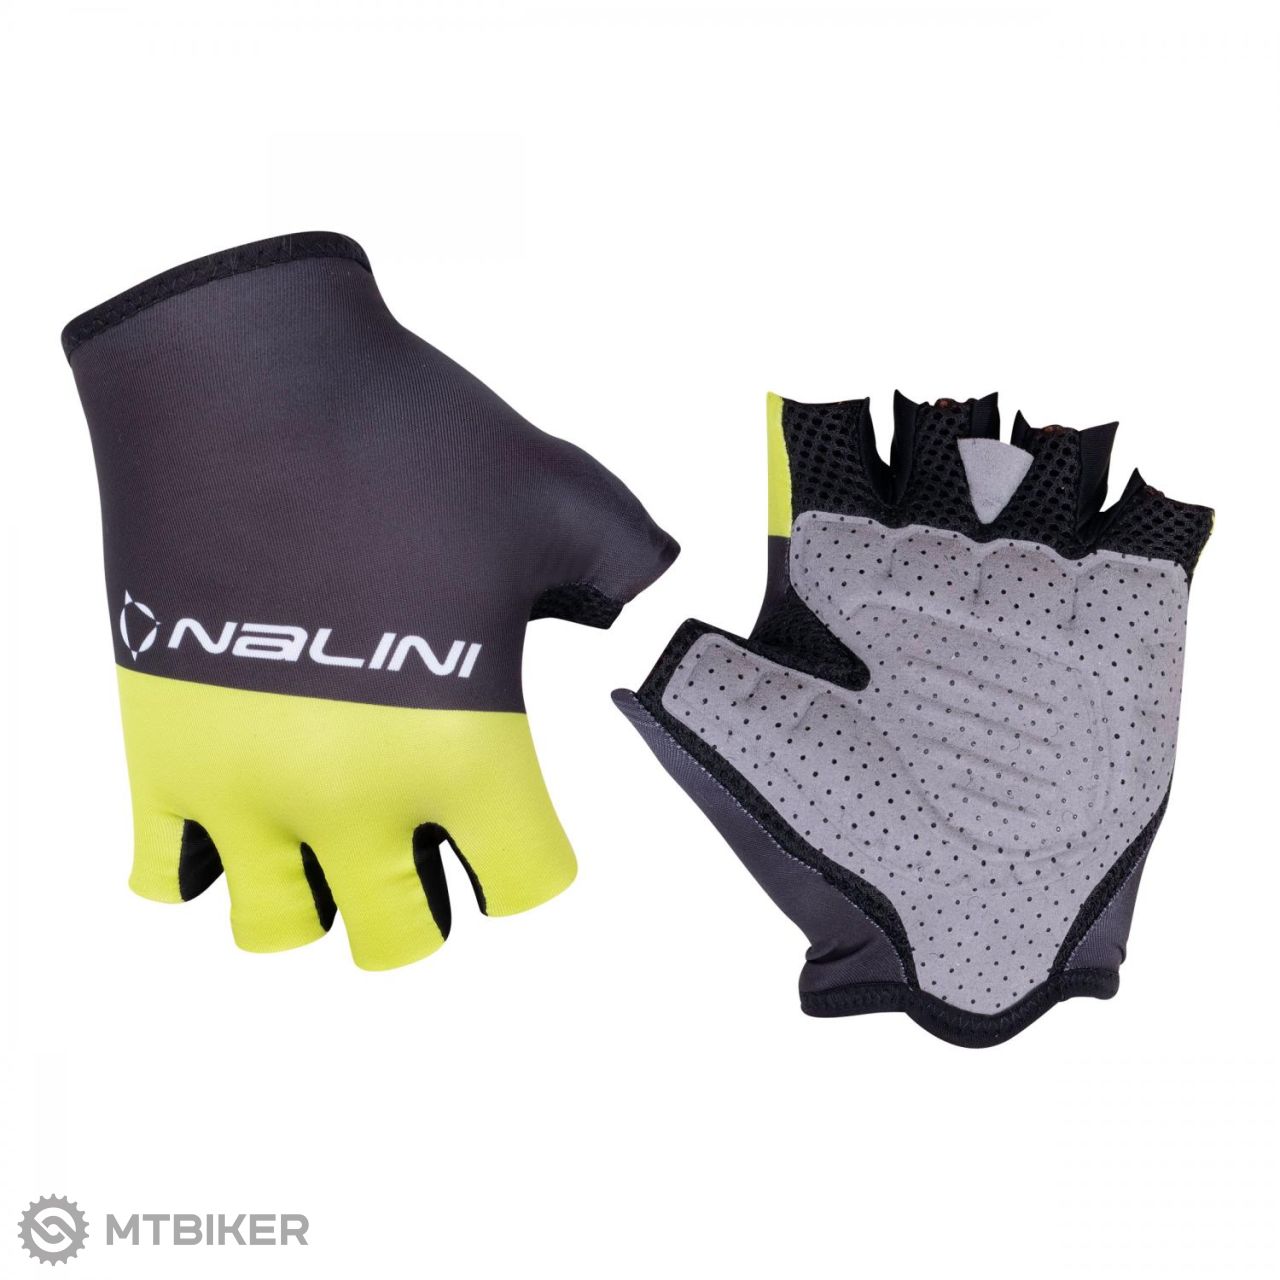 Nalini Bas Freesport rukavice, černá/neon žlutá